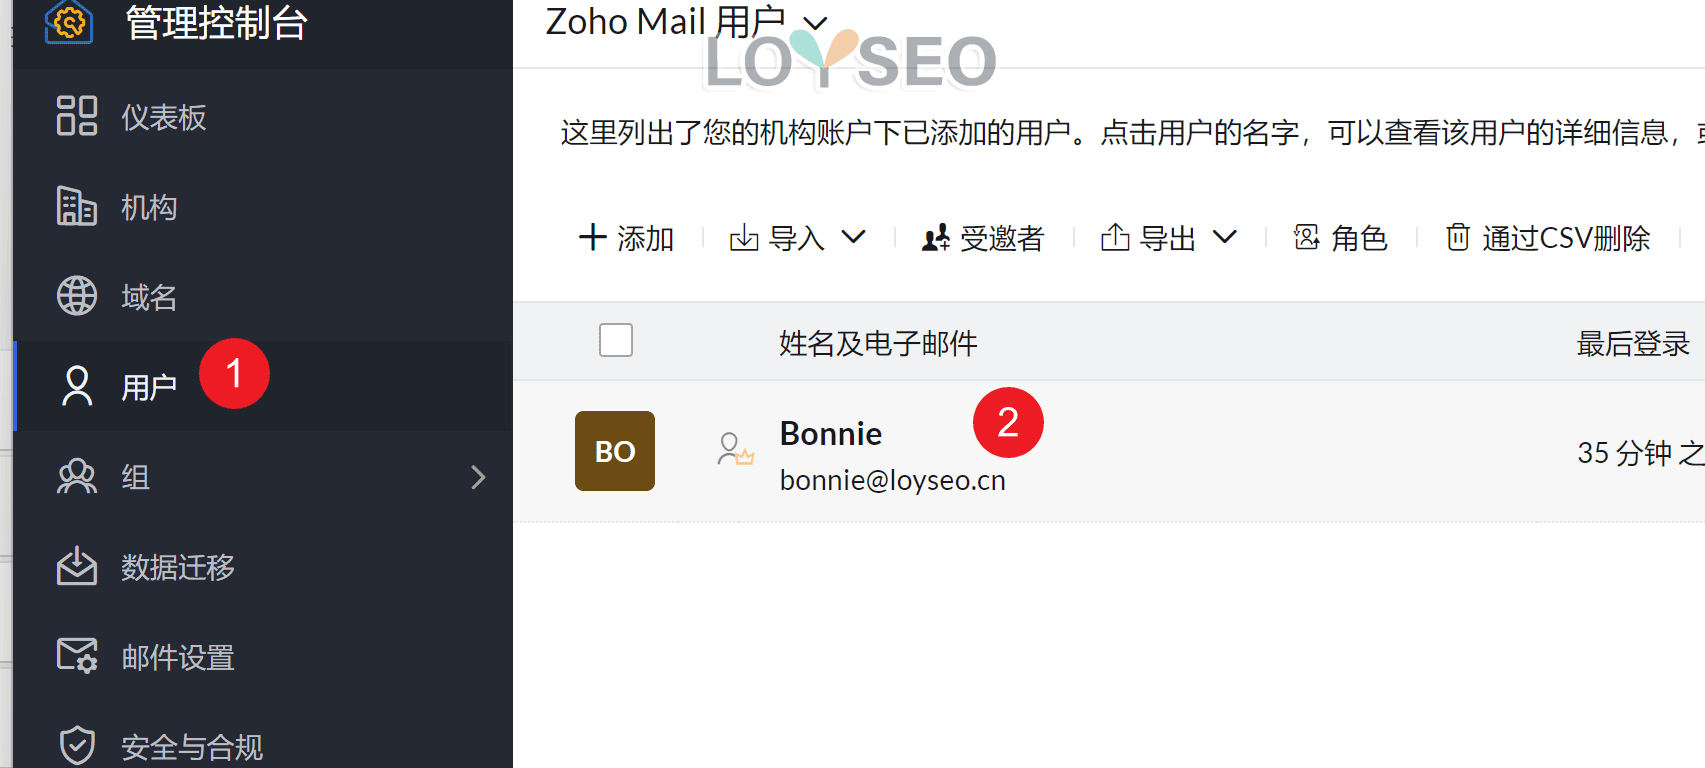 ZOHO企业邮箱教程：注册账号、绑定域名、设置解析记录